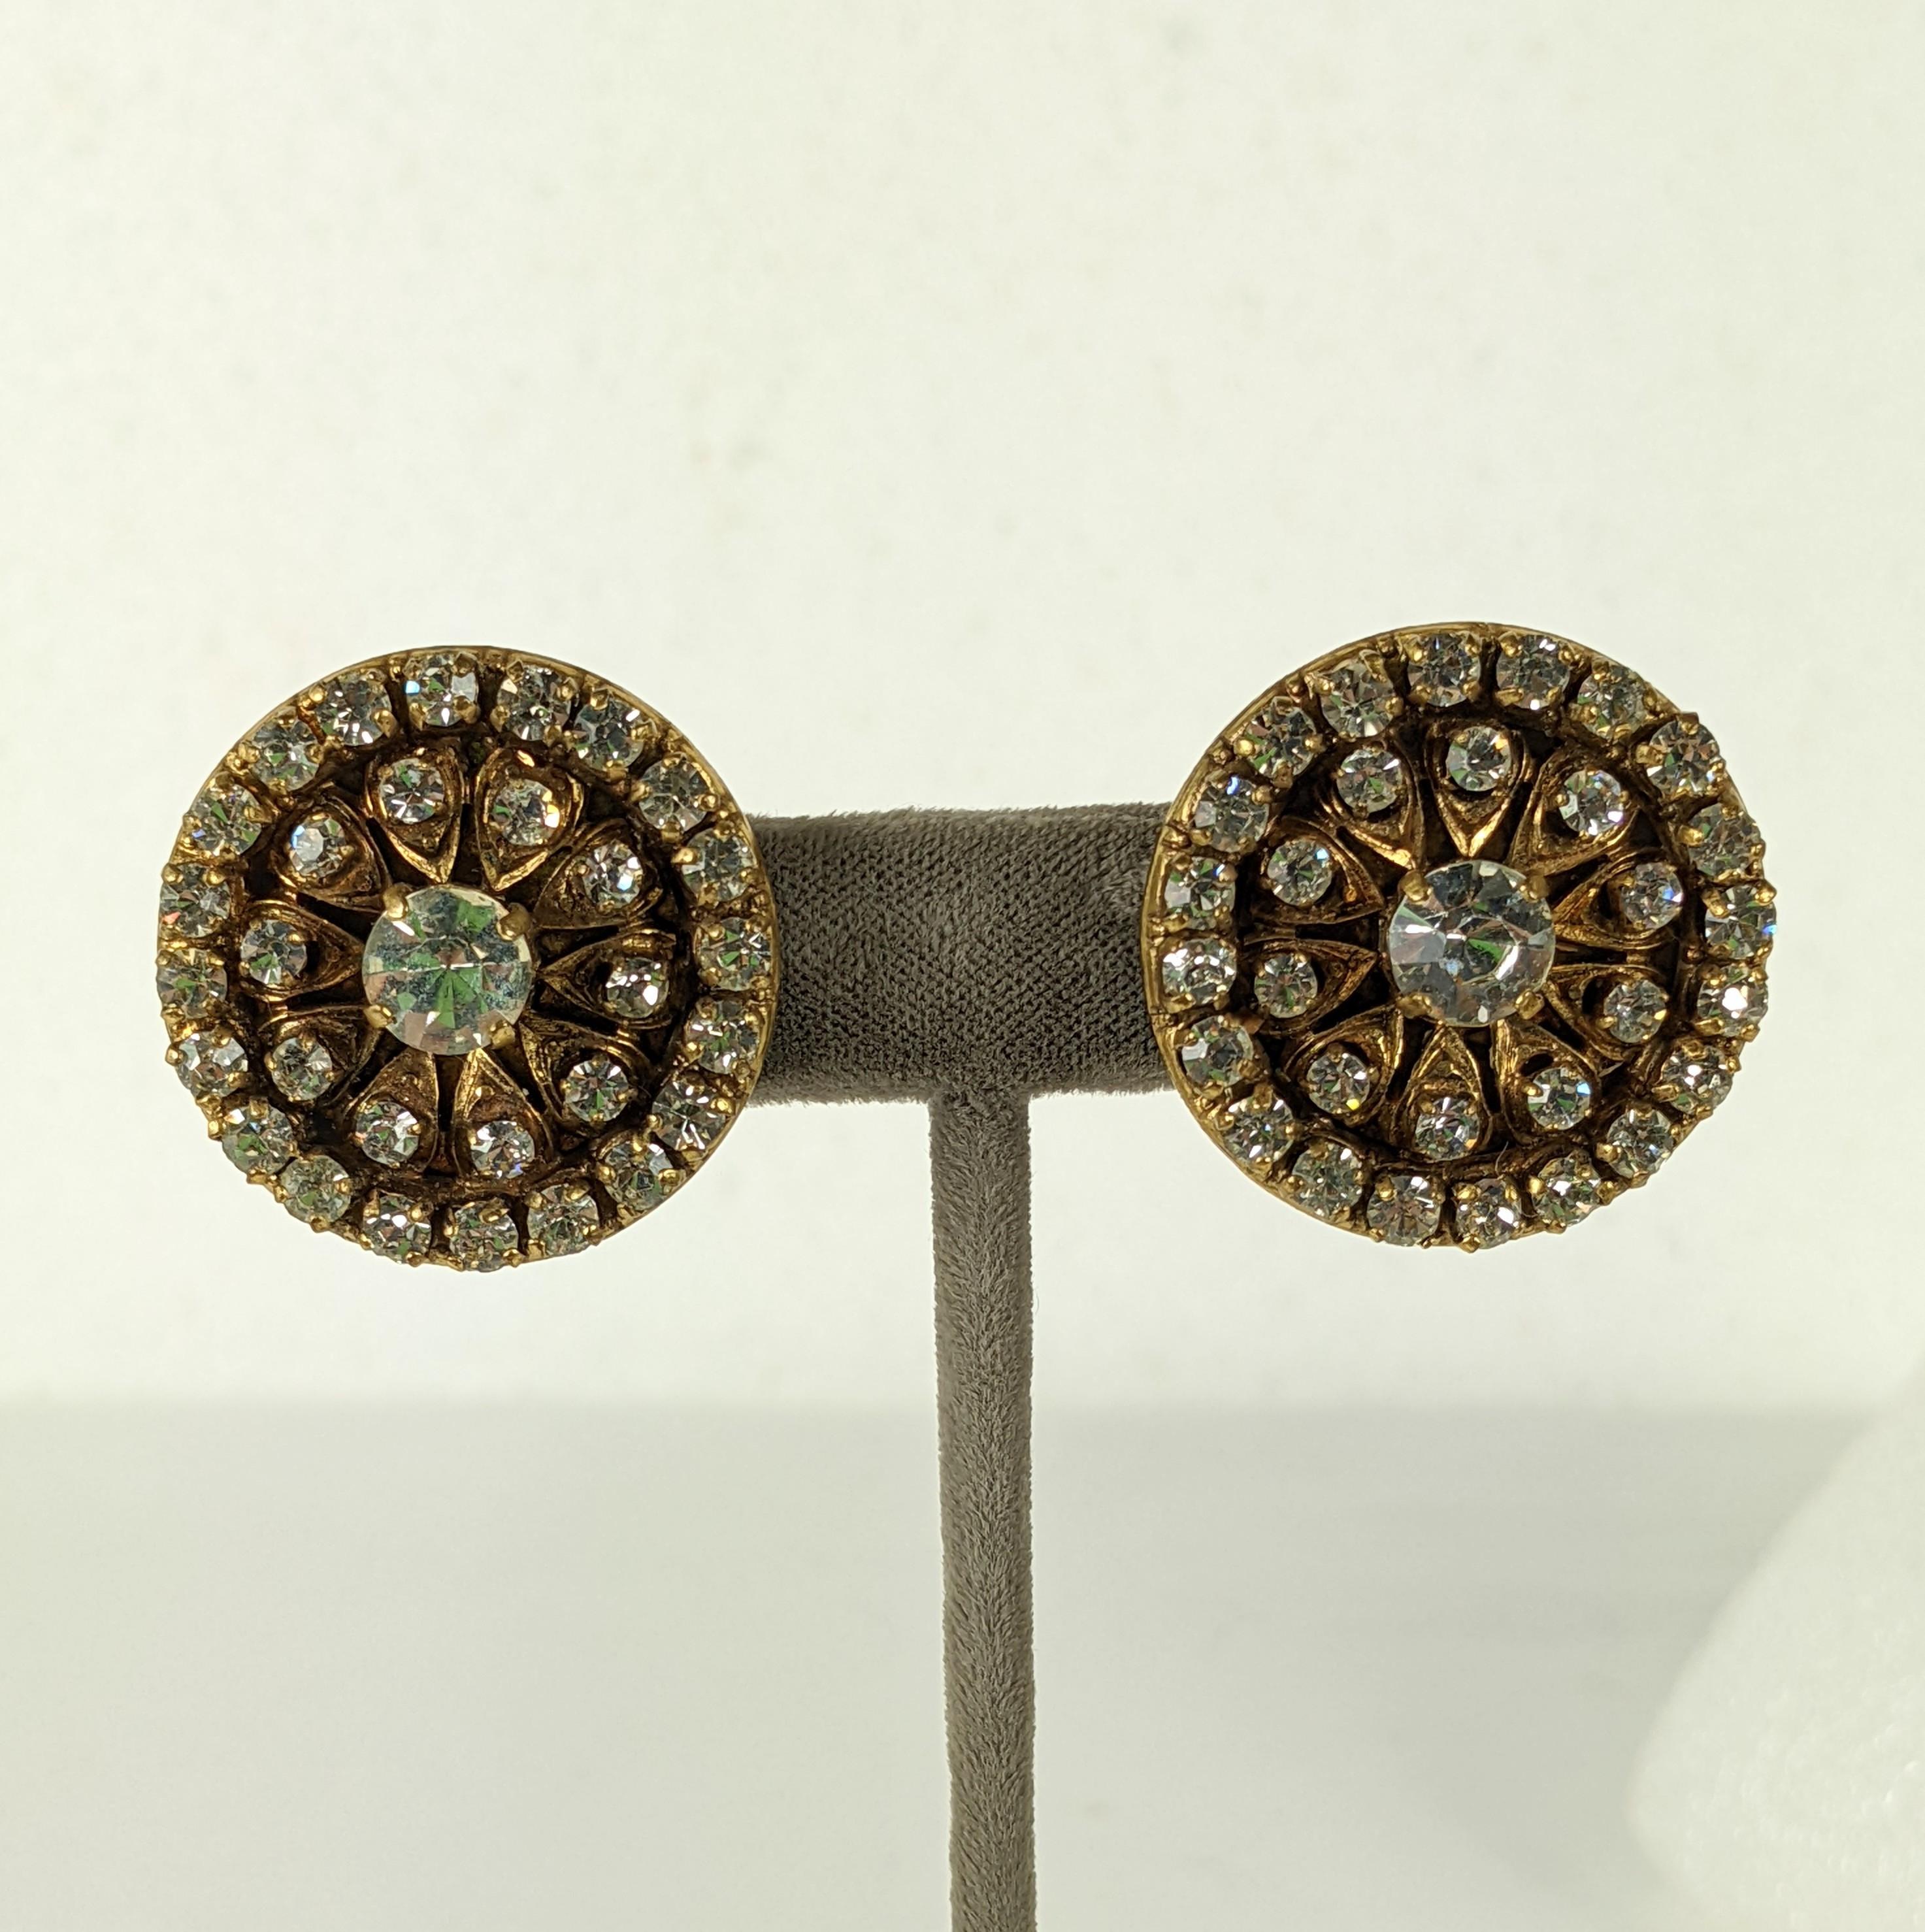 Chanel Pave Encrusted Ohrringe aus den 1990er Jahren. Unterschiedlich große Swarovski-Kristalle sind auf einer runden, filigranen Unterlage in antiker Goldbronze gefasst. Clip-Back-Armaturen.  1.25